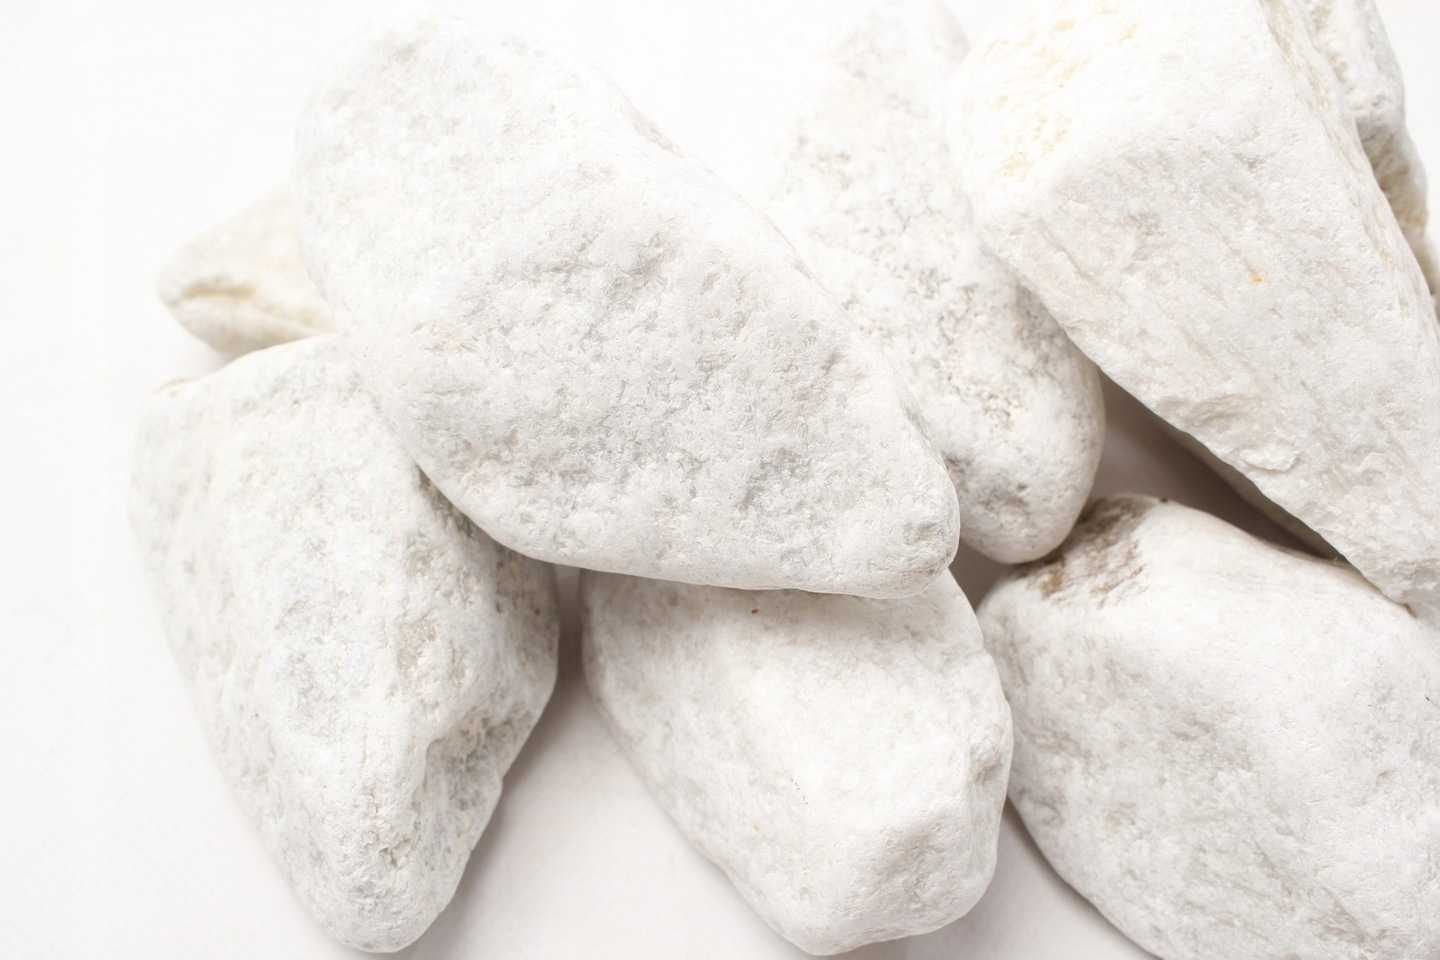 Skała Snow Stone Biały Kamień do Akwarium lub Terrarium 2kg